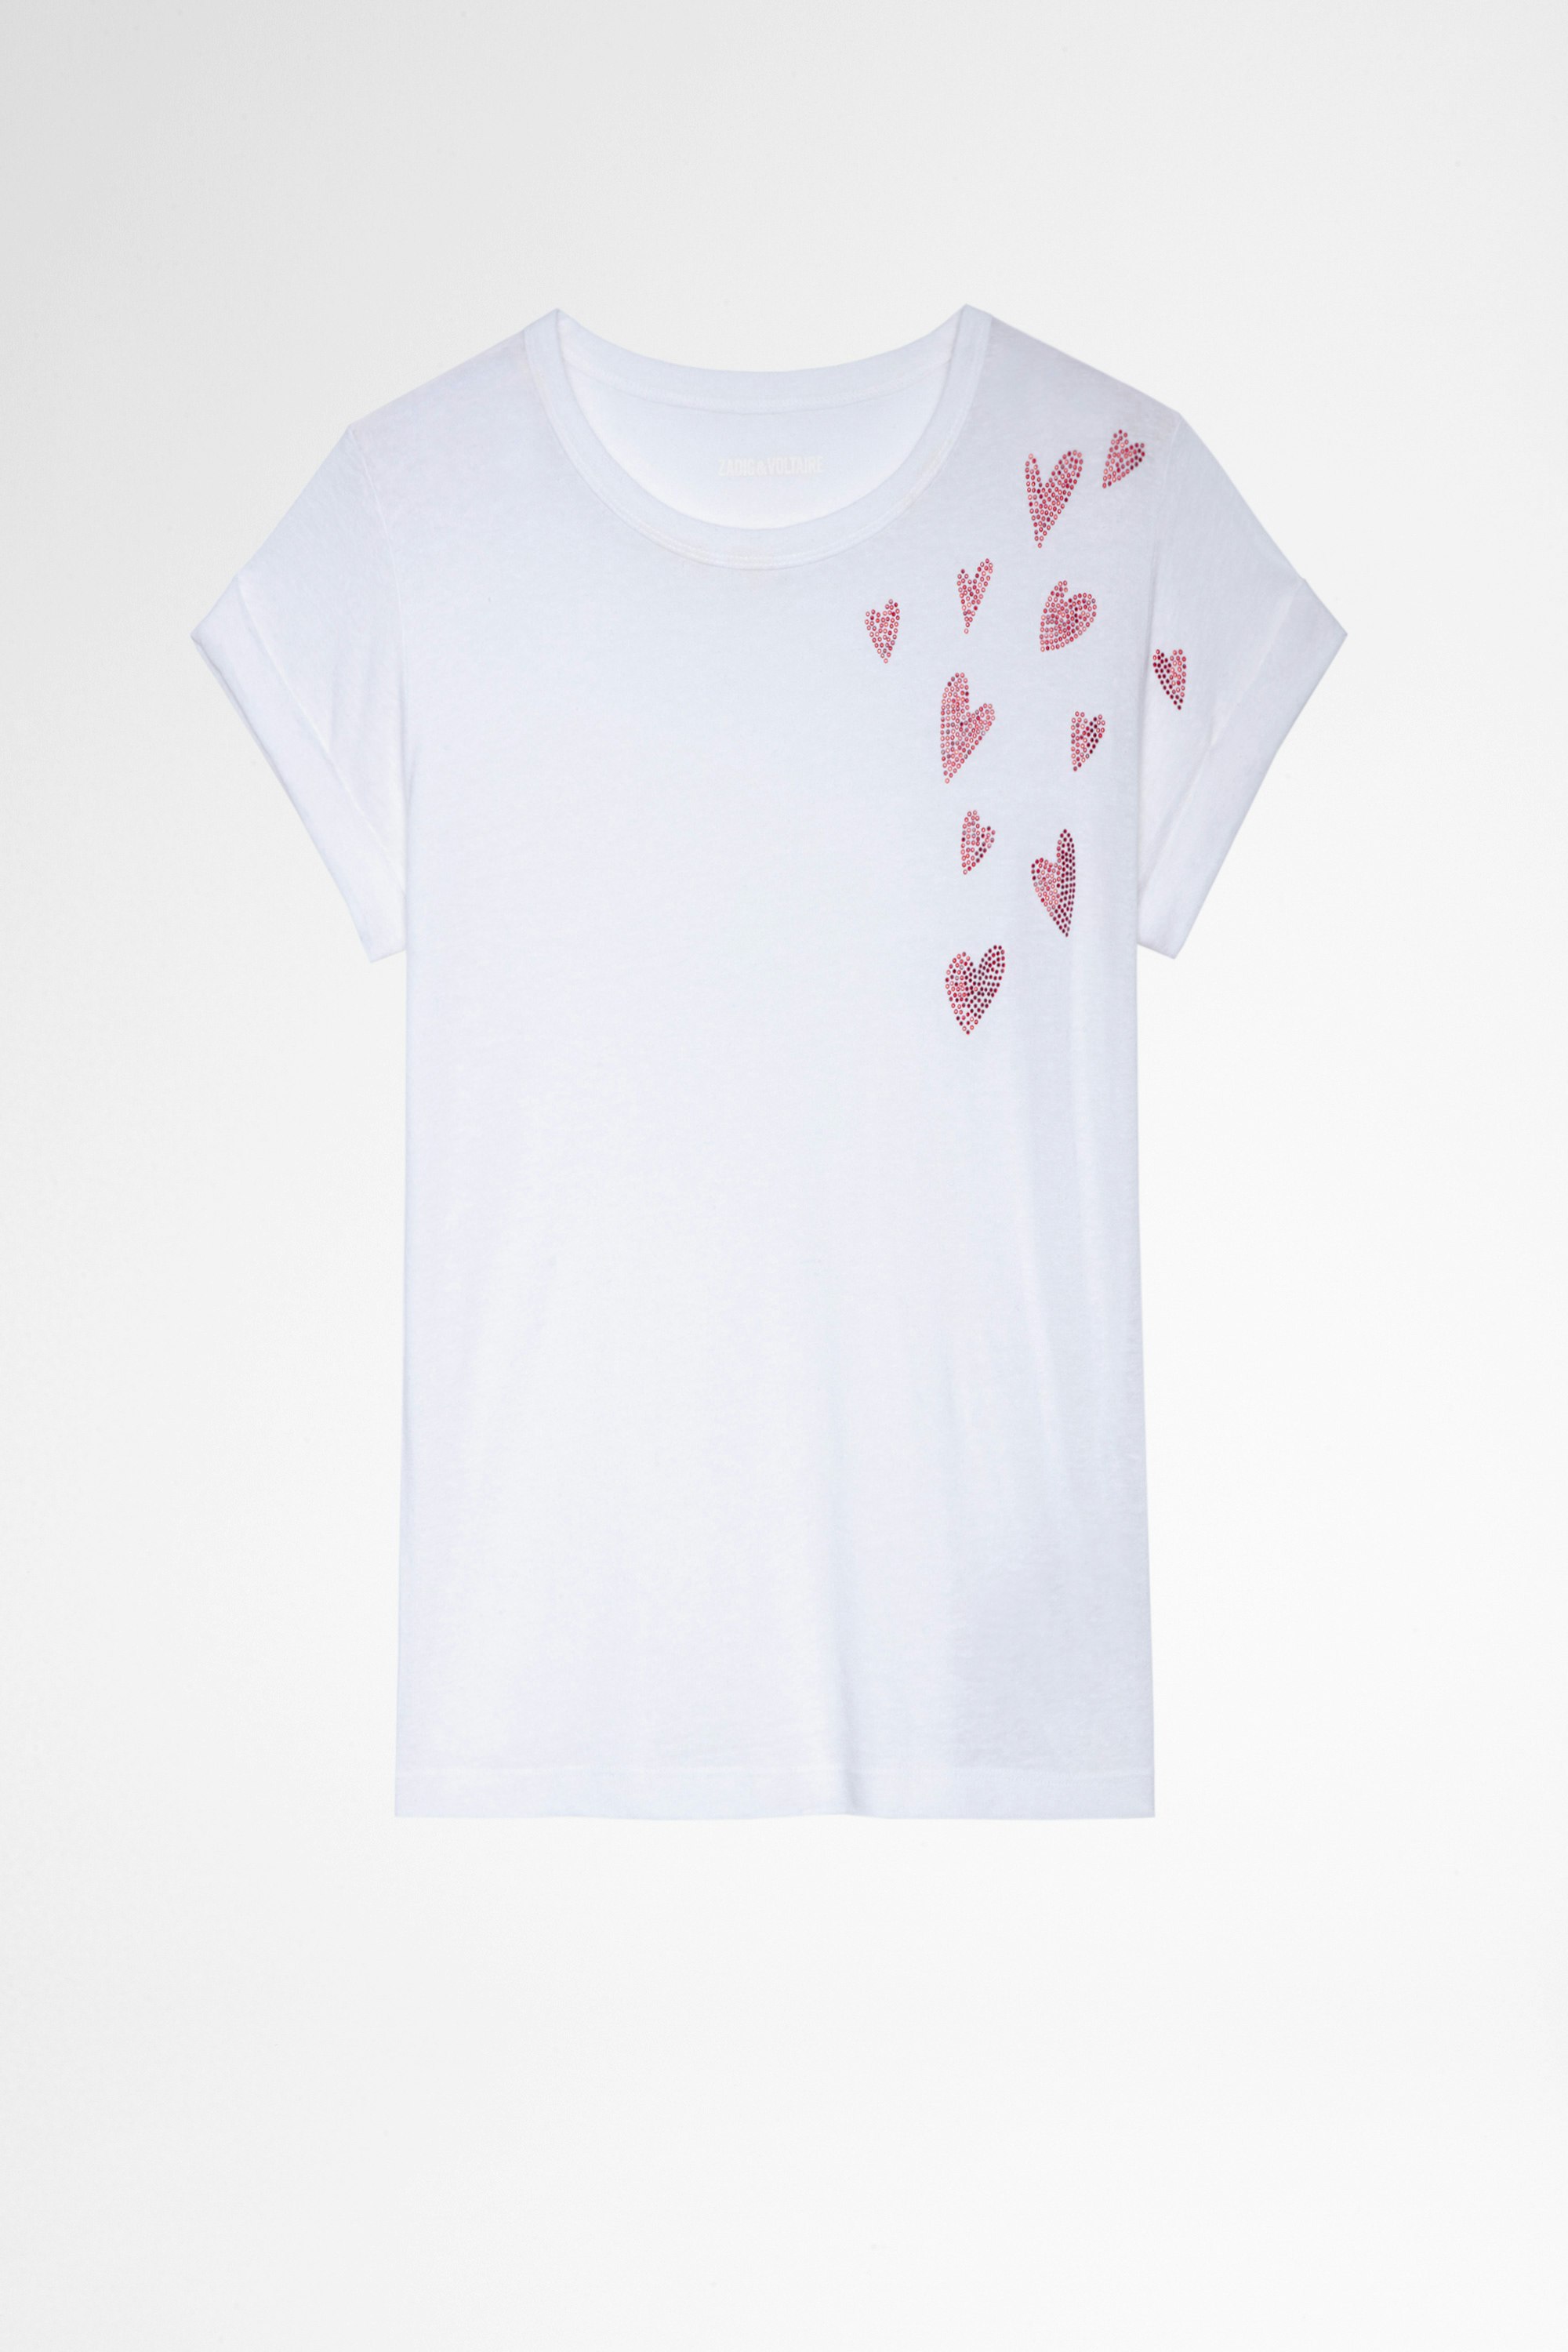 Camiseta Anya Heart Camiseta blanca de mujer con corazones de strass